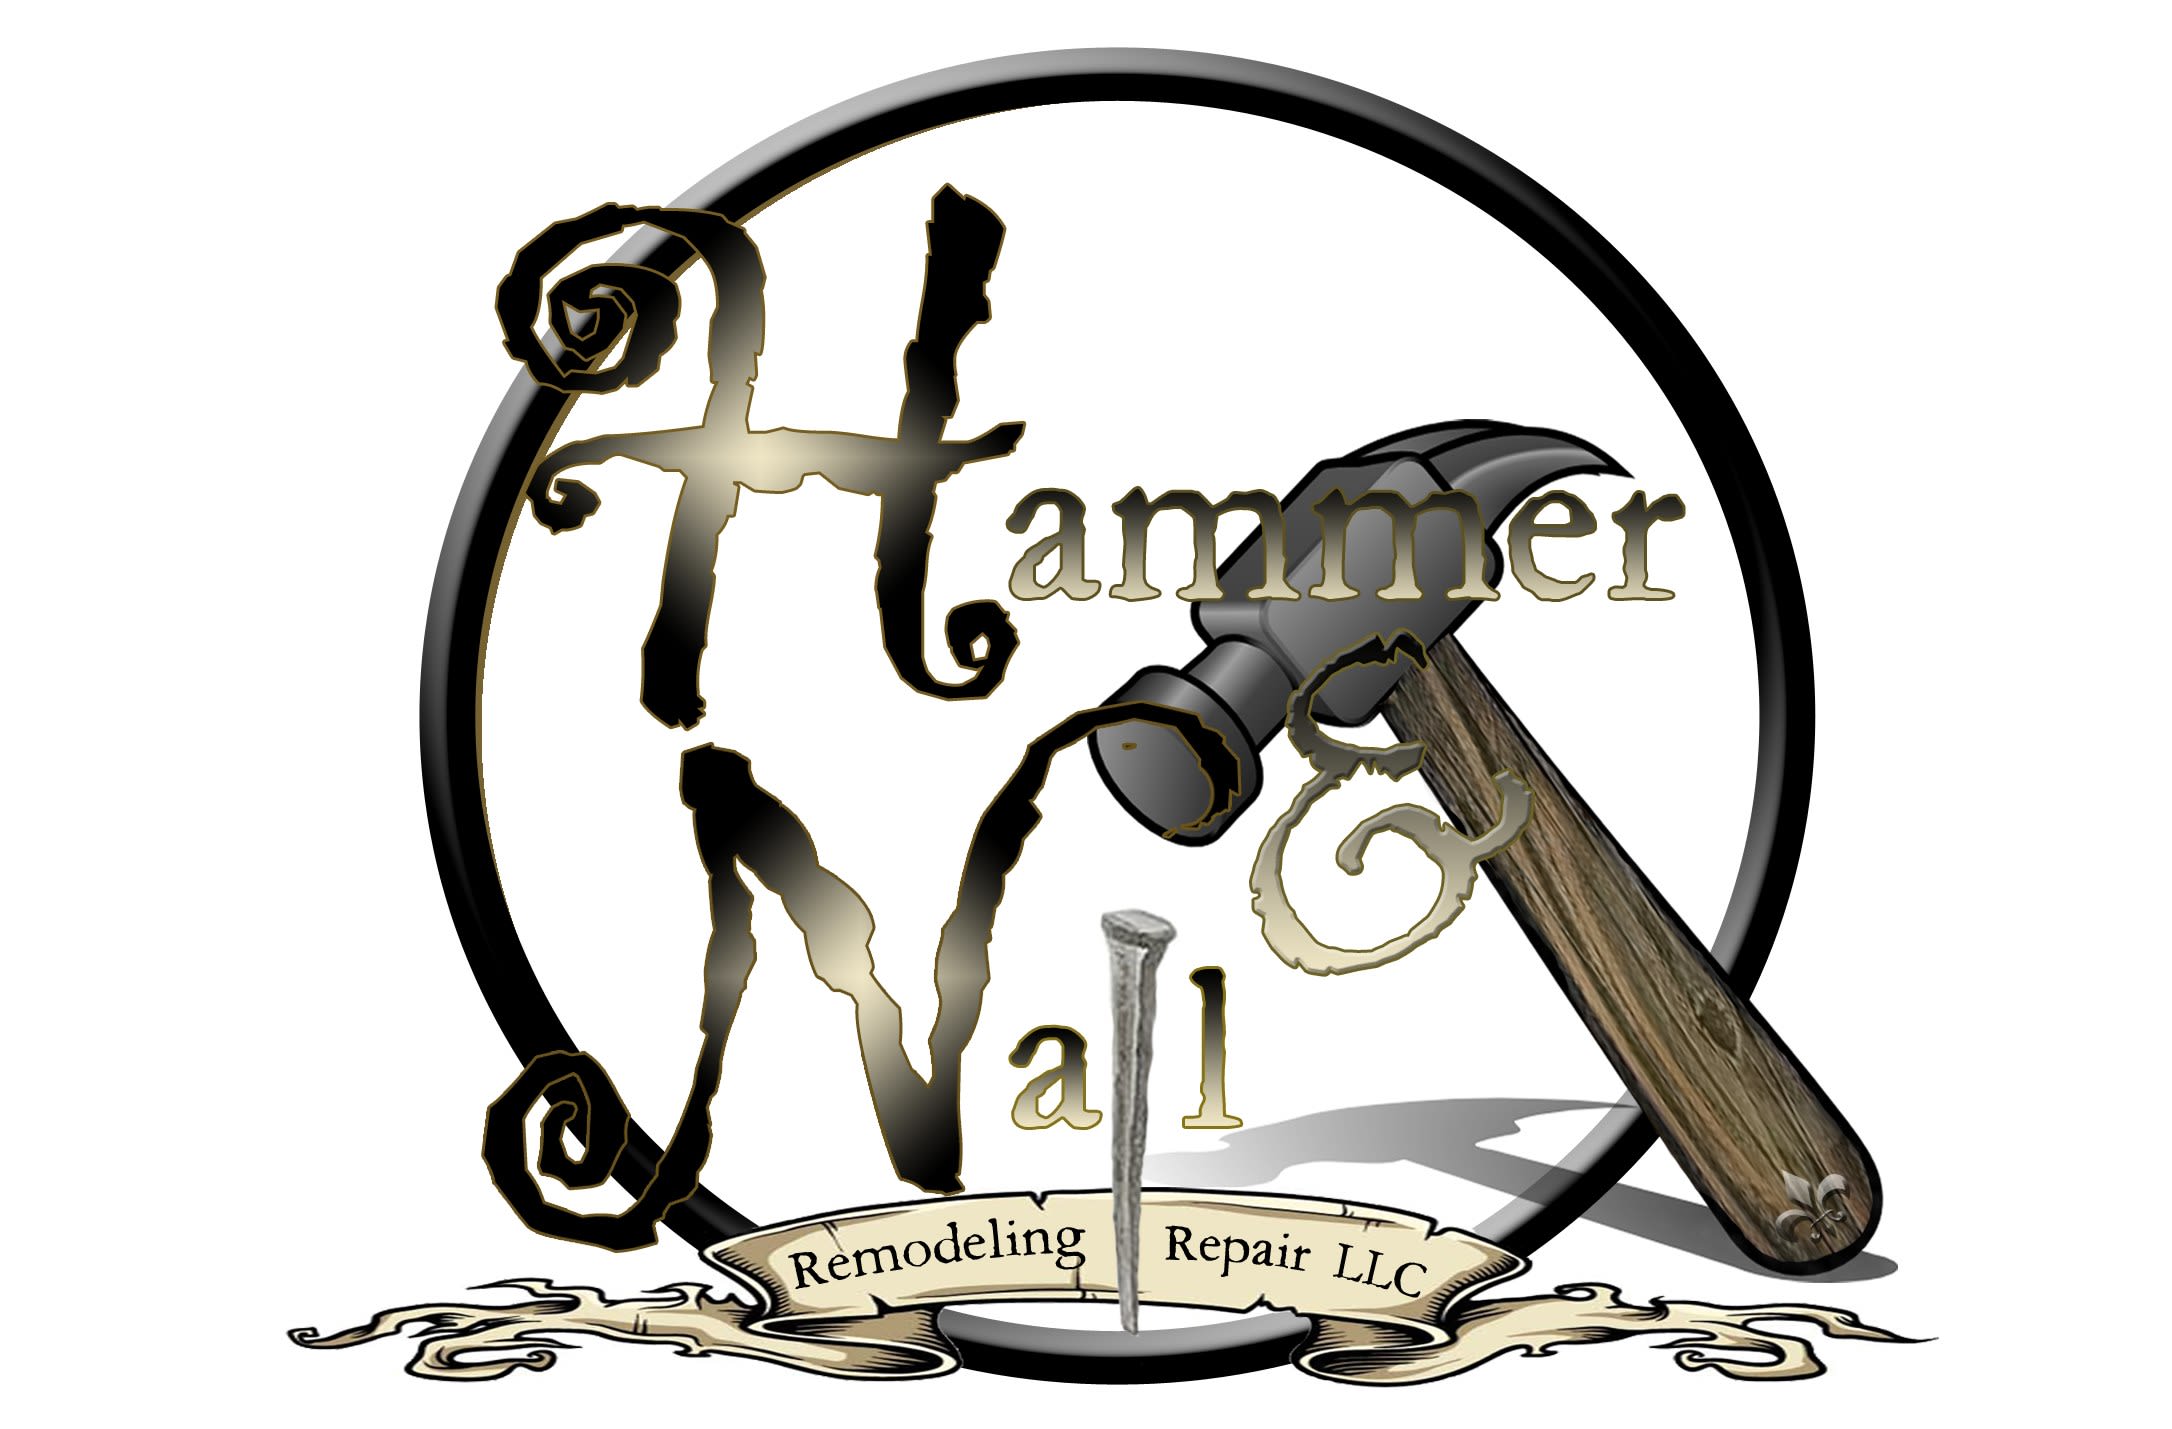 Hammer & Nail Remodeling & Repair